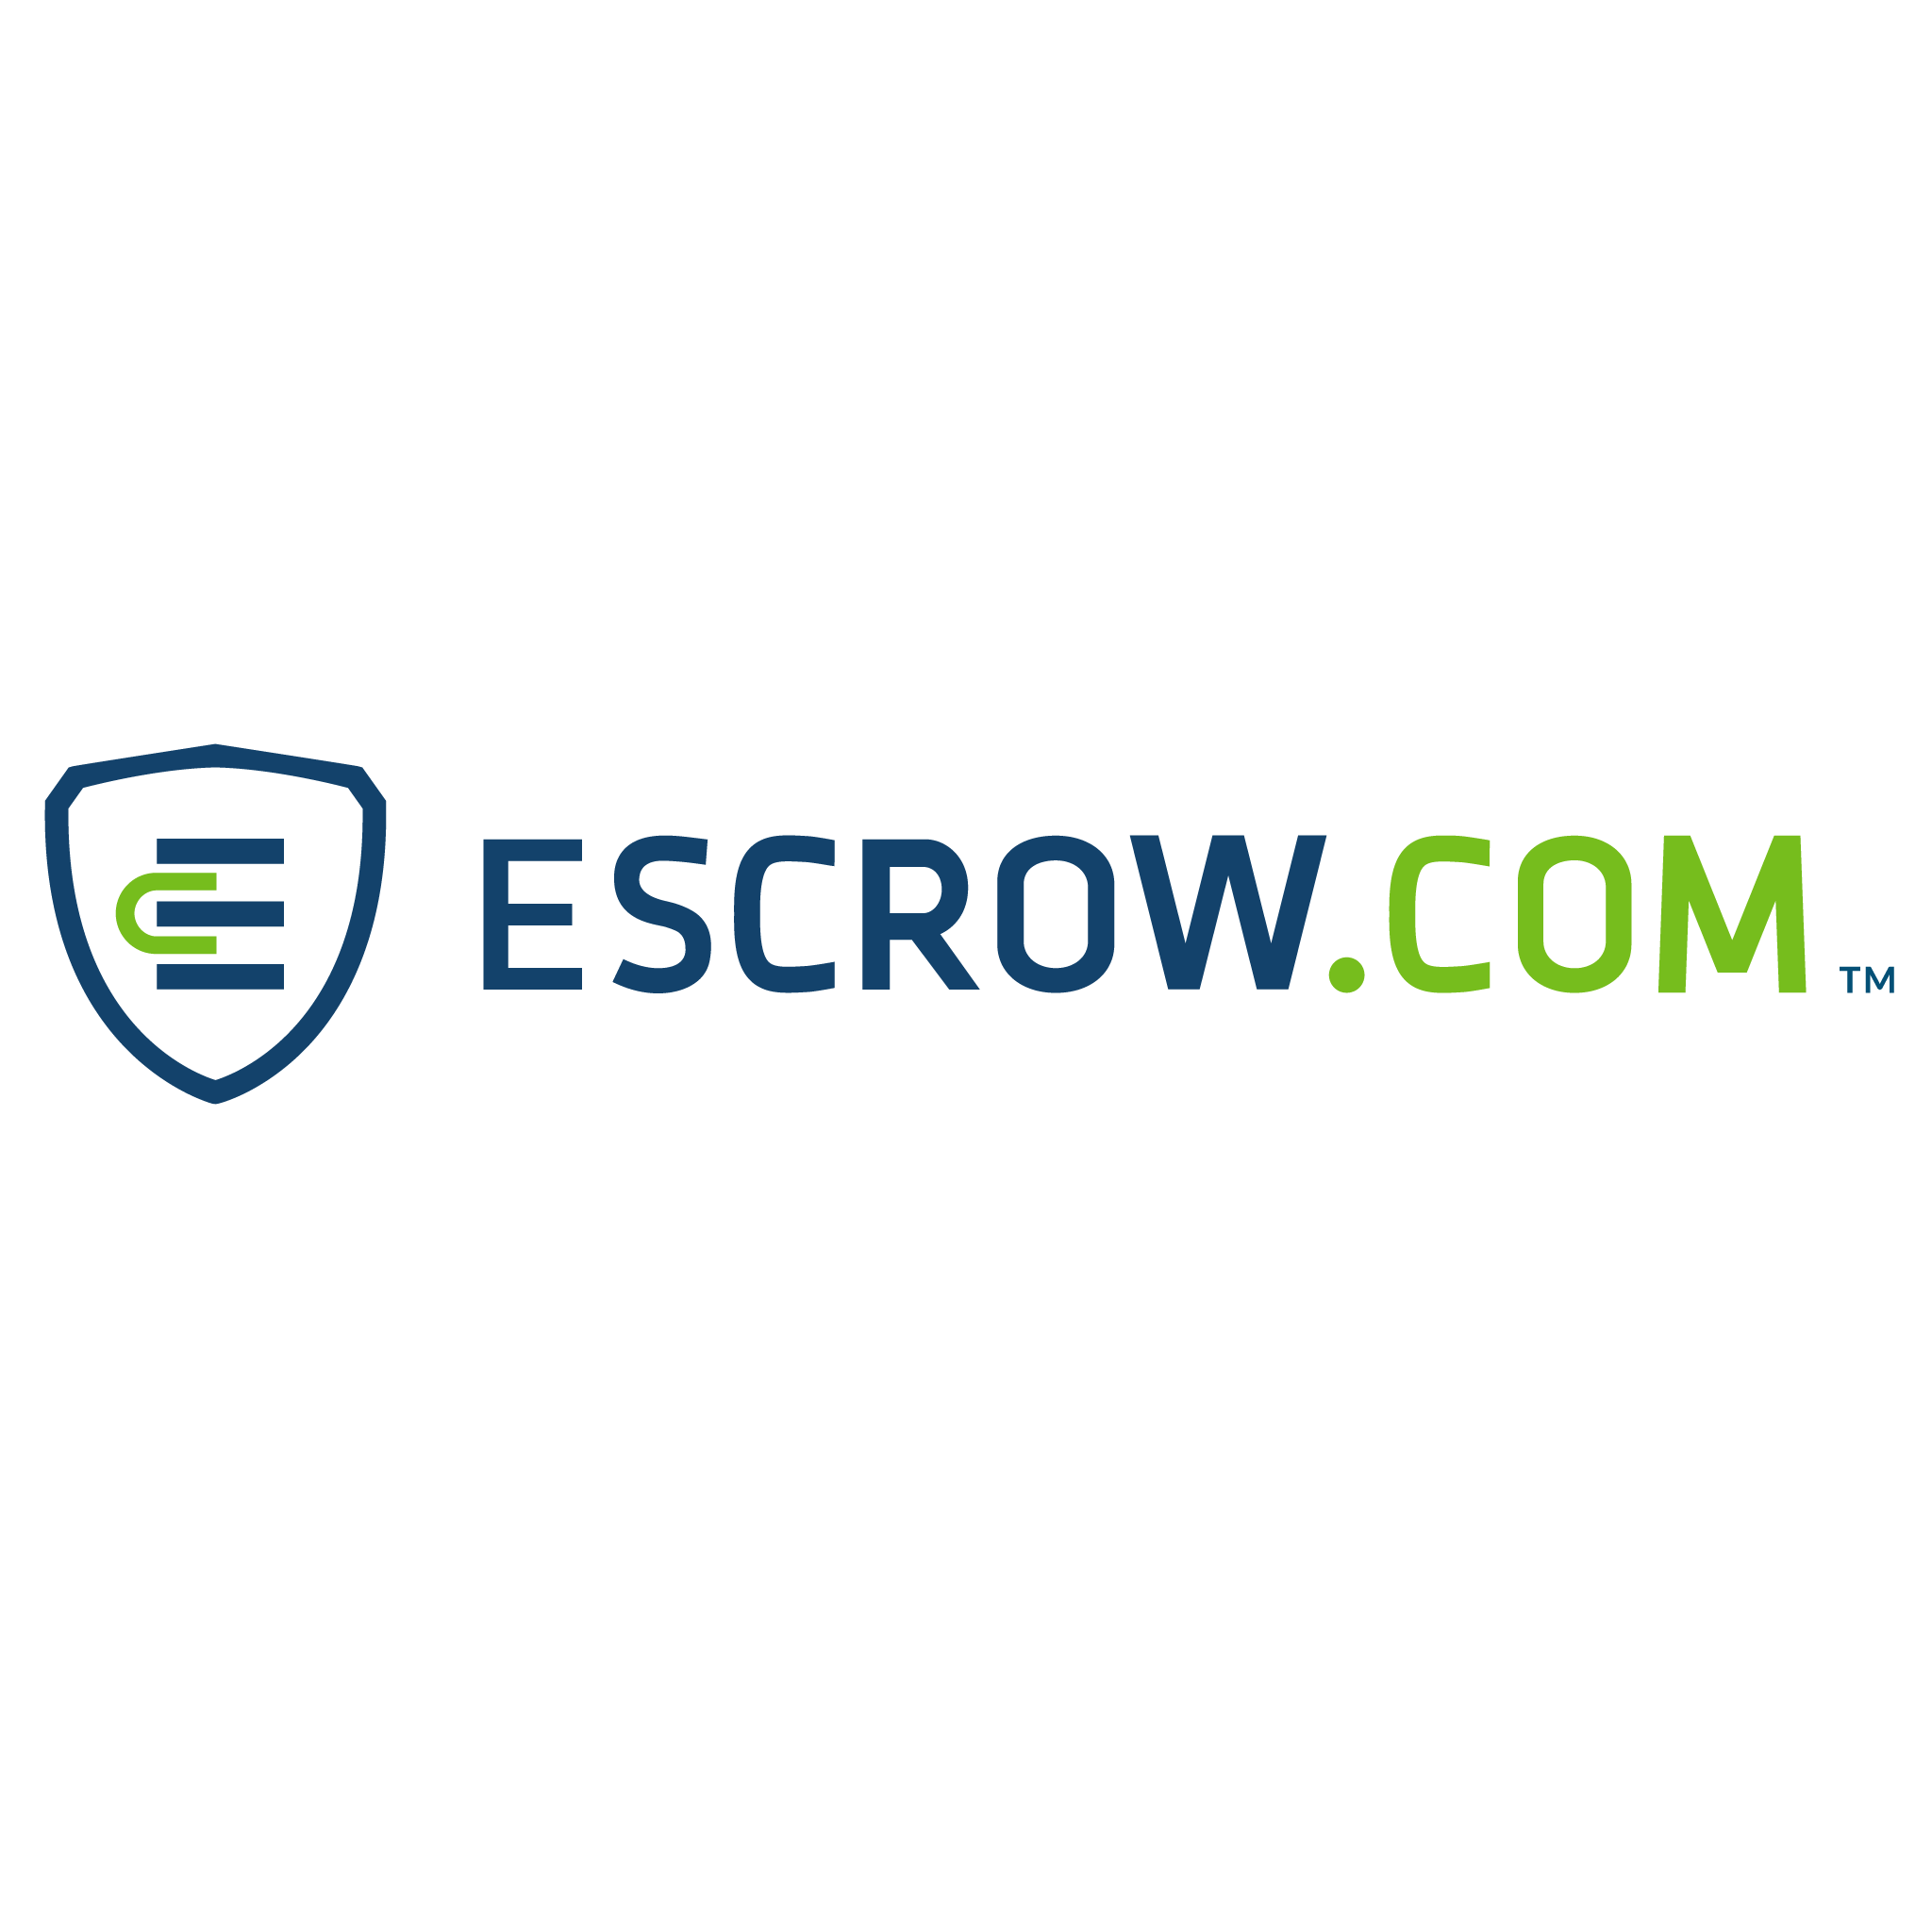 Escrow_com_logo